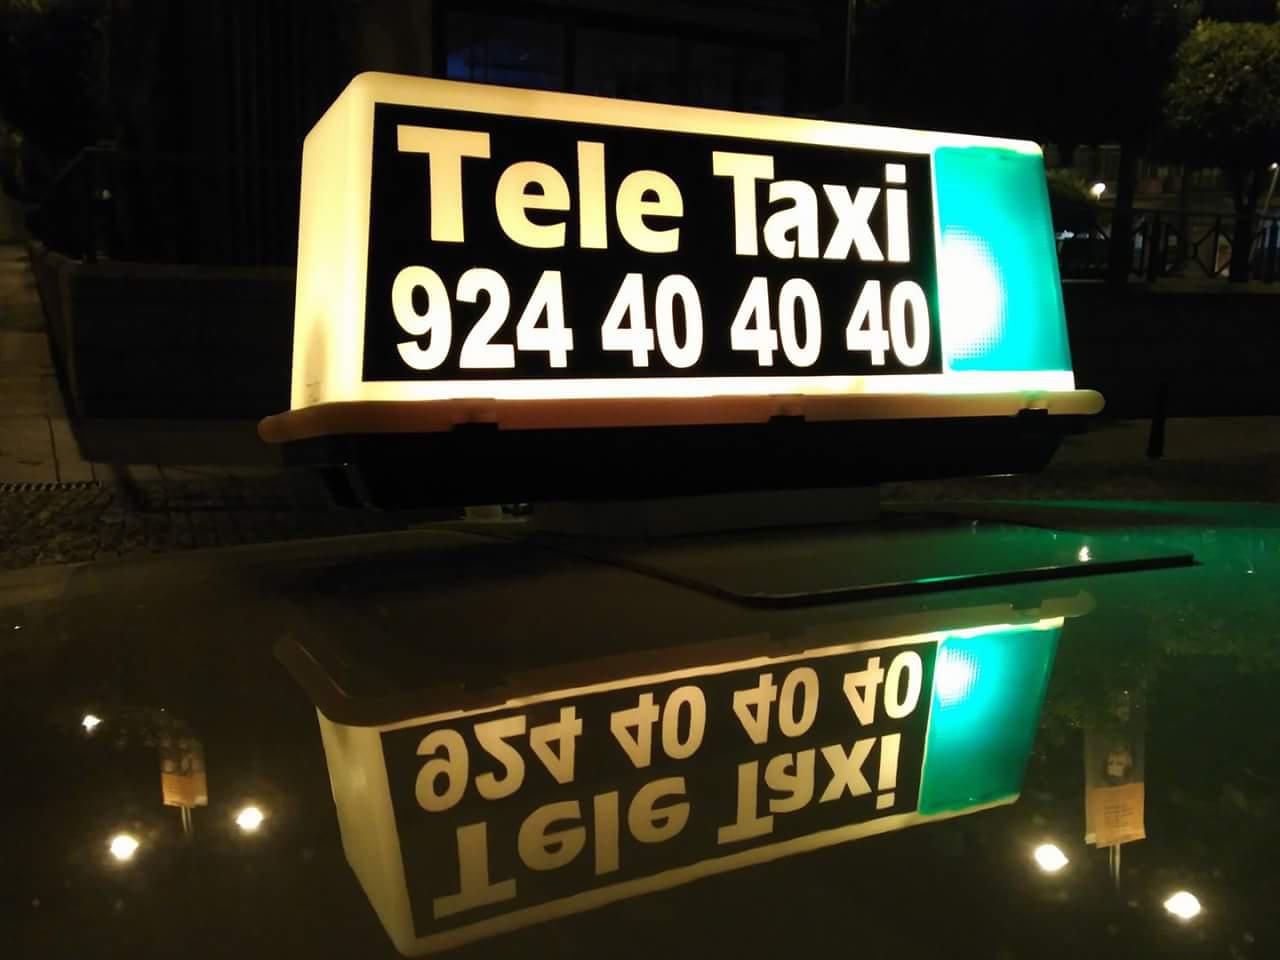 Images Tele Taxi Mérida